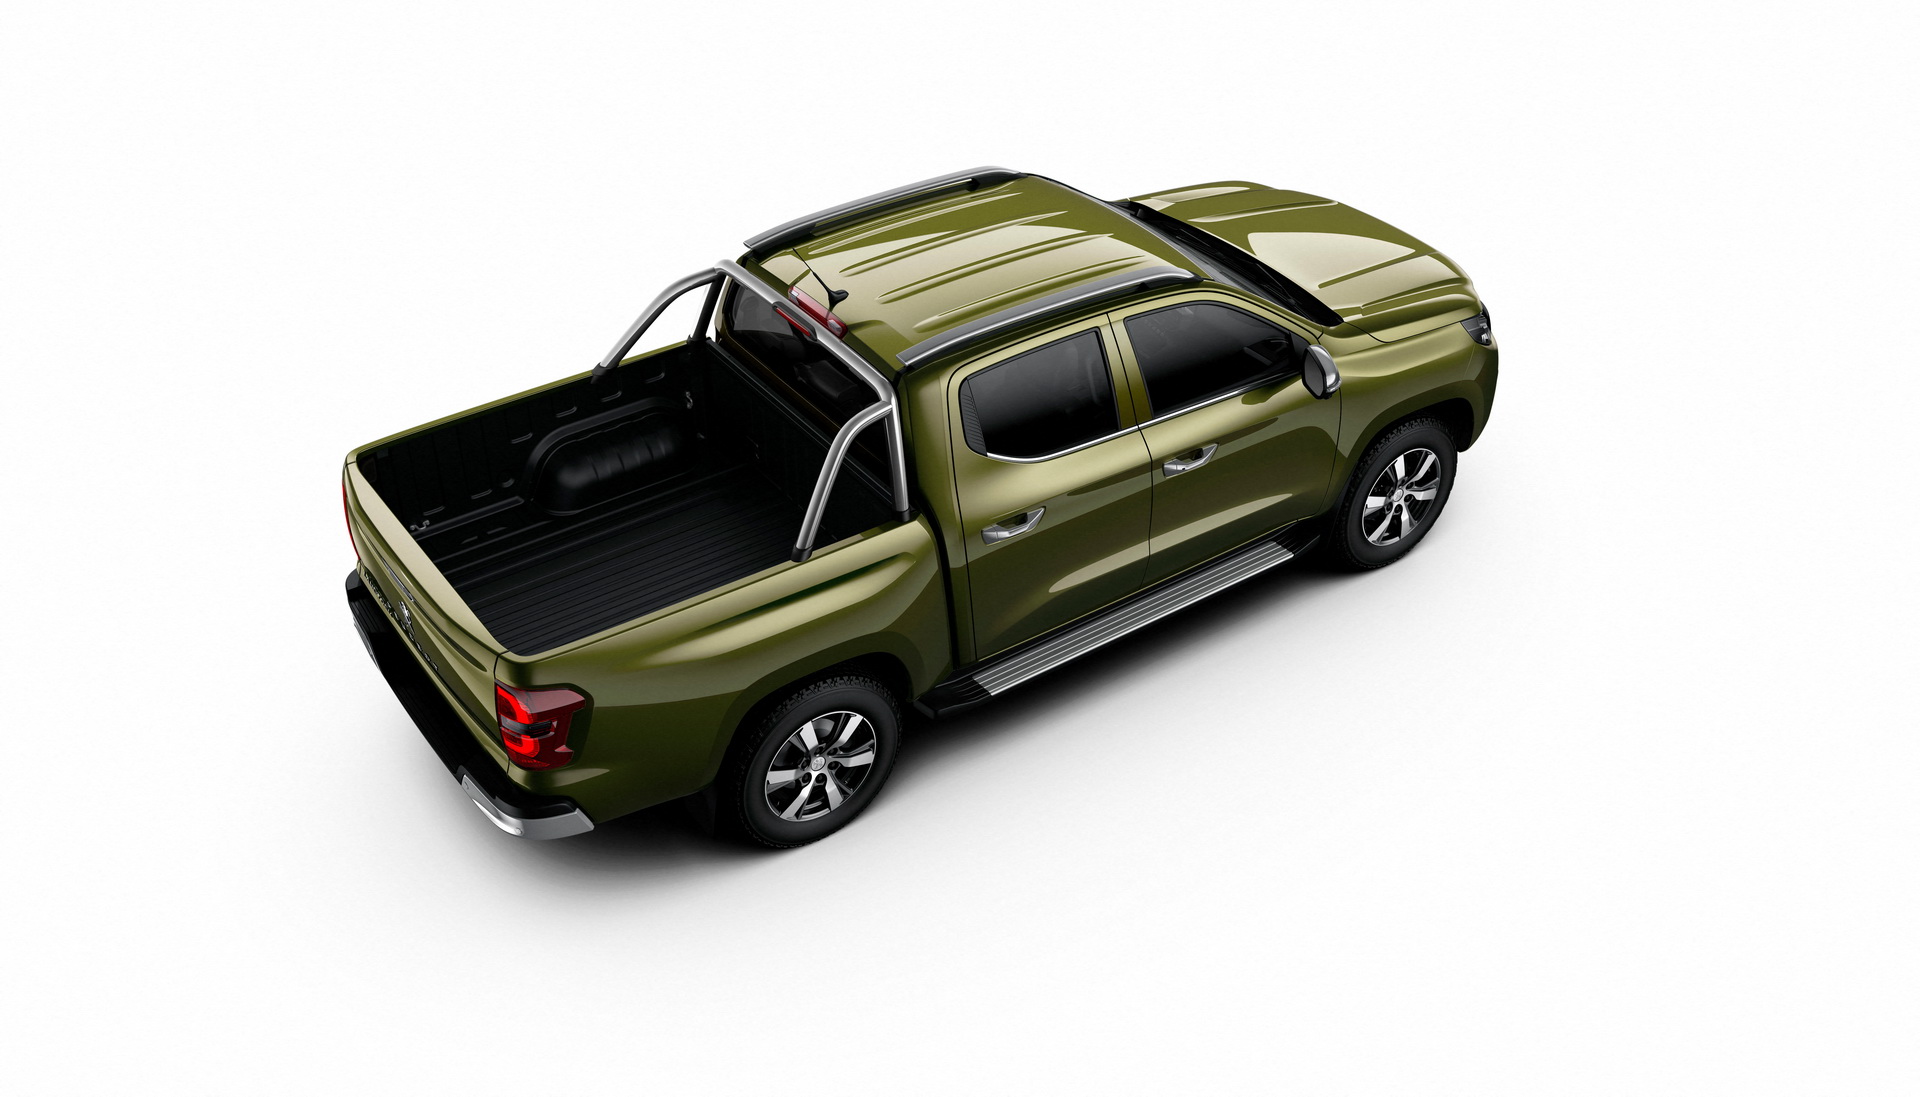 Peugeot yeni pickup modelini tanıttı: Landtrek